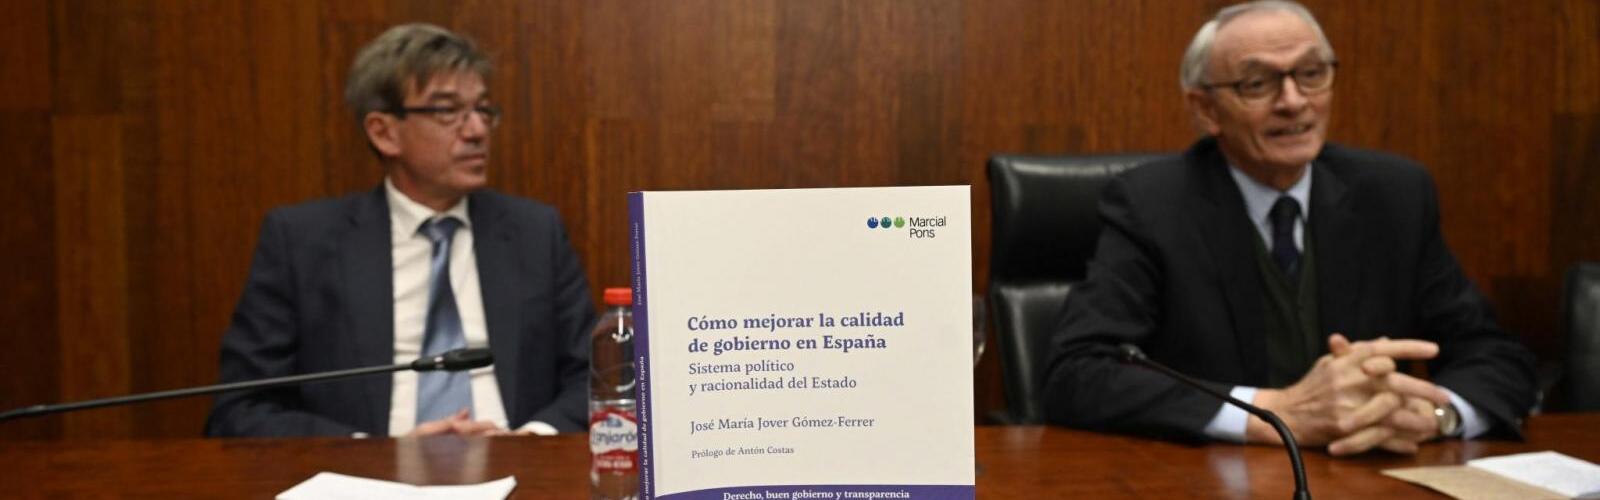 José María Jover, letrado mayor del Consejo de Estado, presenta en la UMU su libro 'Cómo mejorar la calidad de gobierno en España'